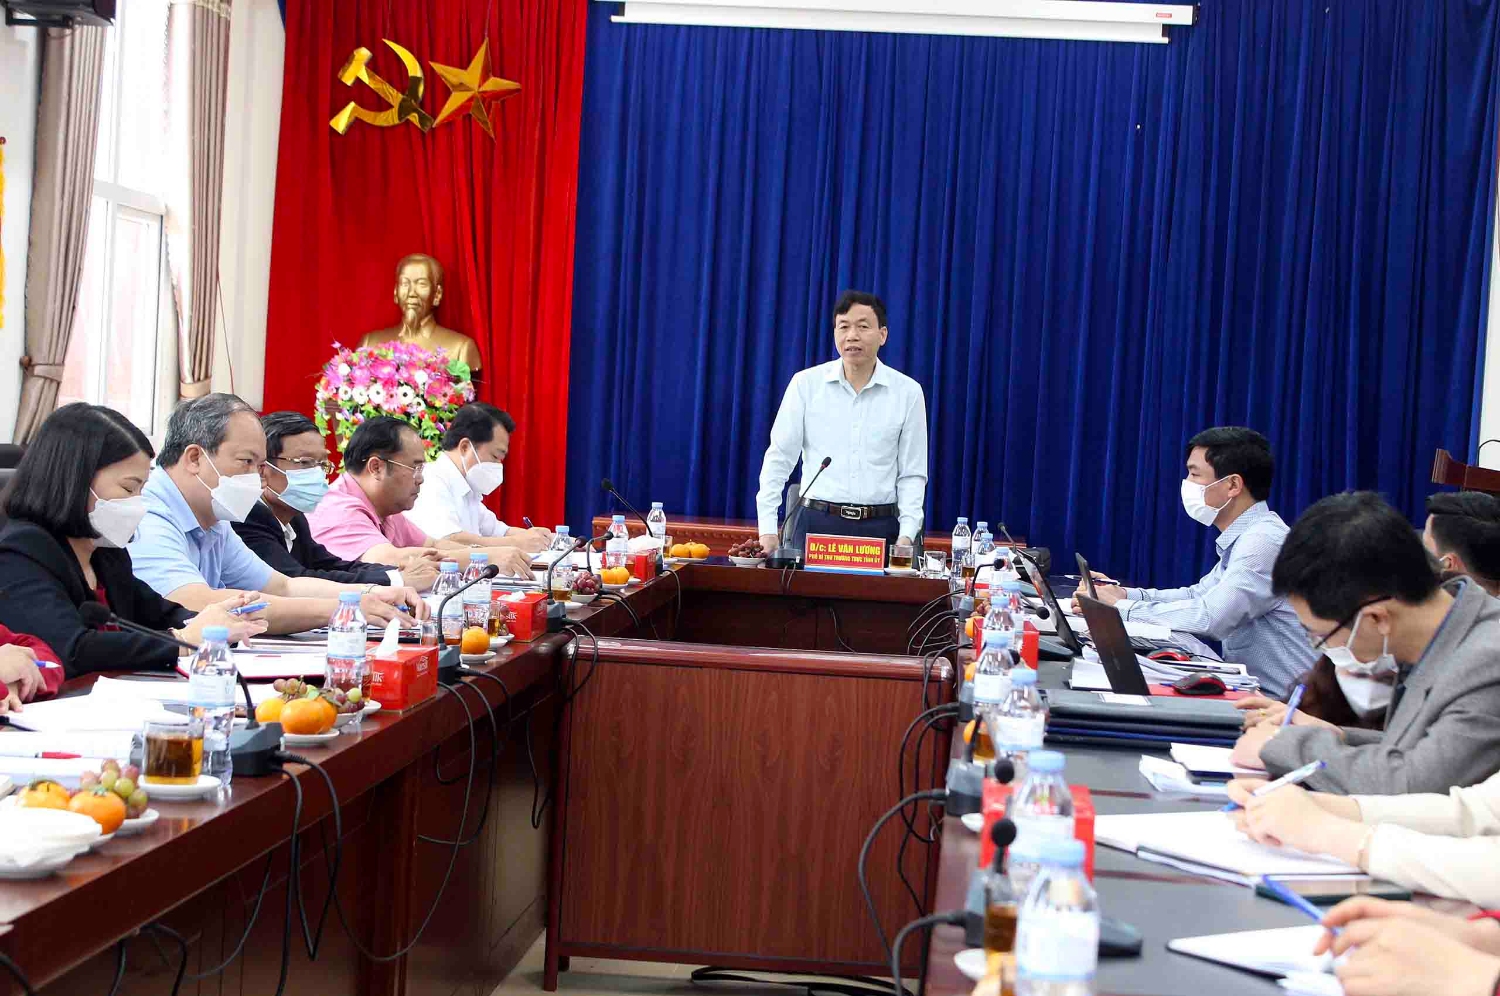 Đồng chí Lê Văn Lương - Phó Bí thư Thường trực Tỉnh ủy phát biểu tại buổi làm việc